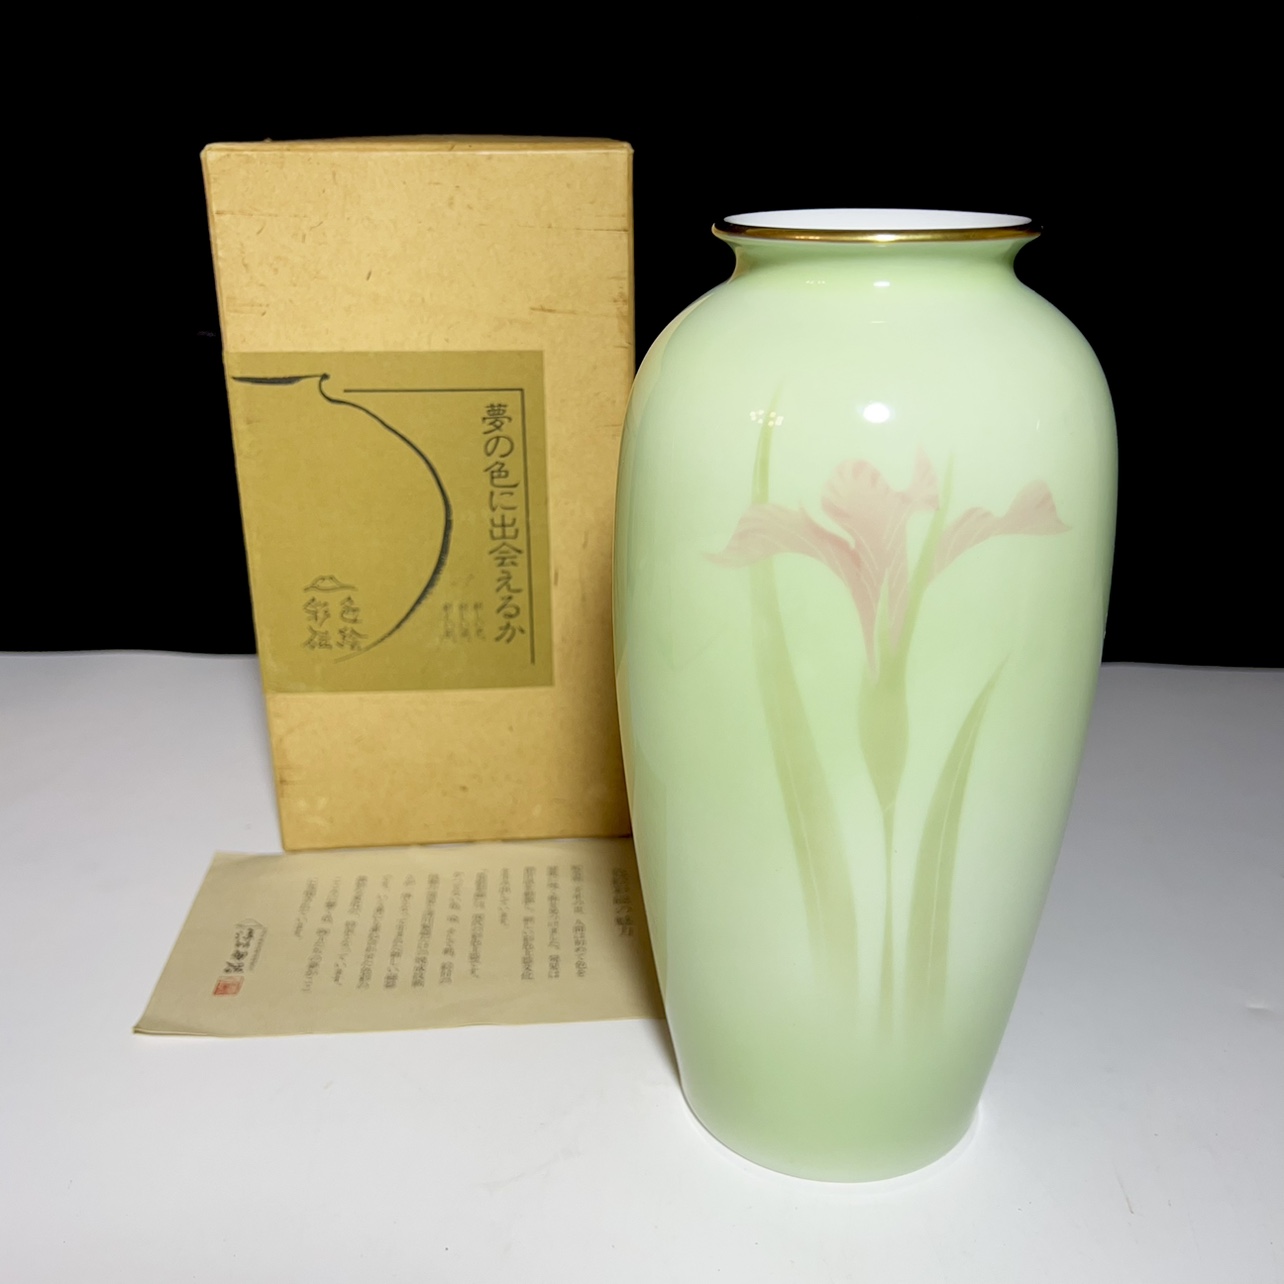 日本回流深川制色绘彩瓷淡绿色兰花纹花瓶